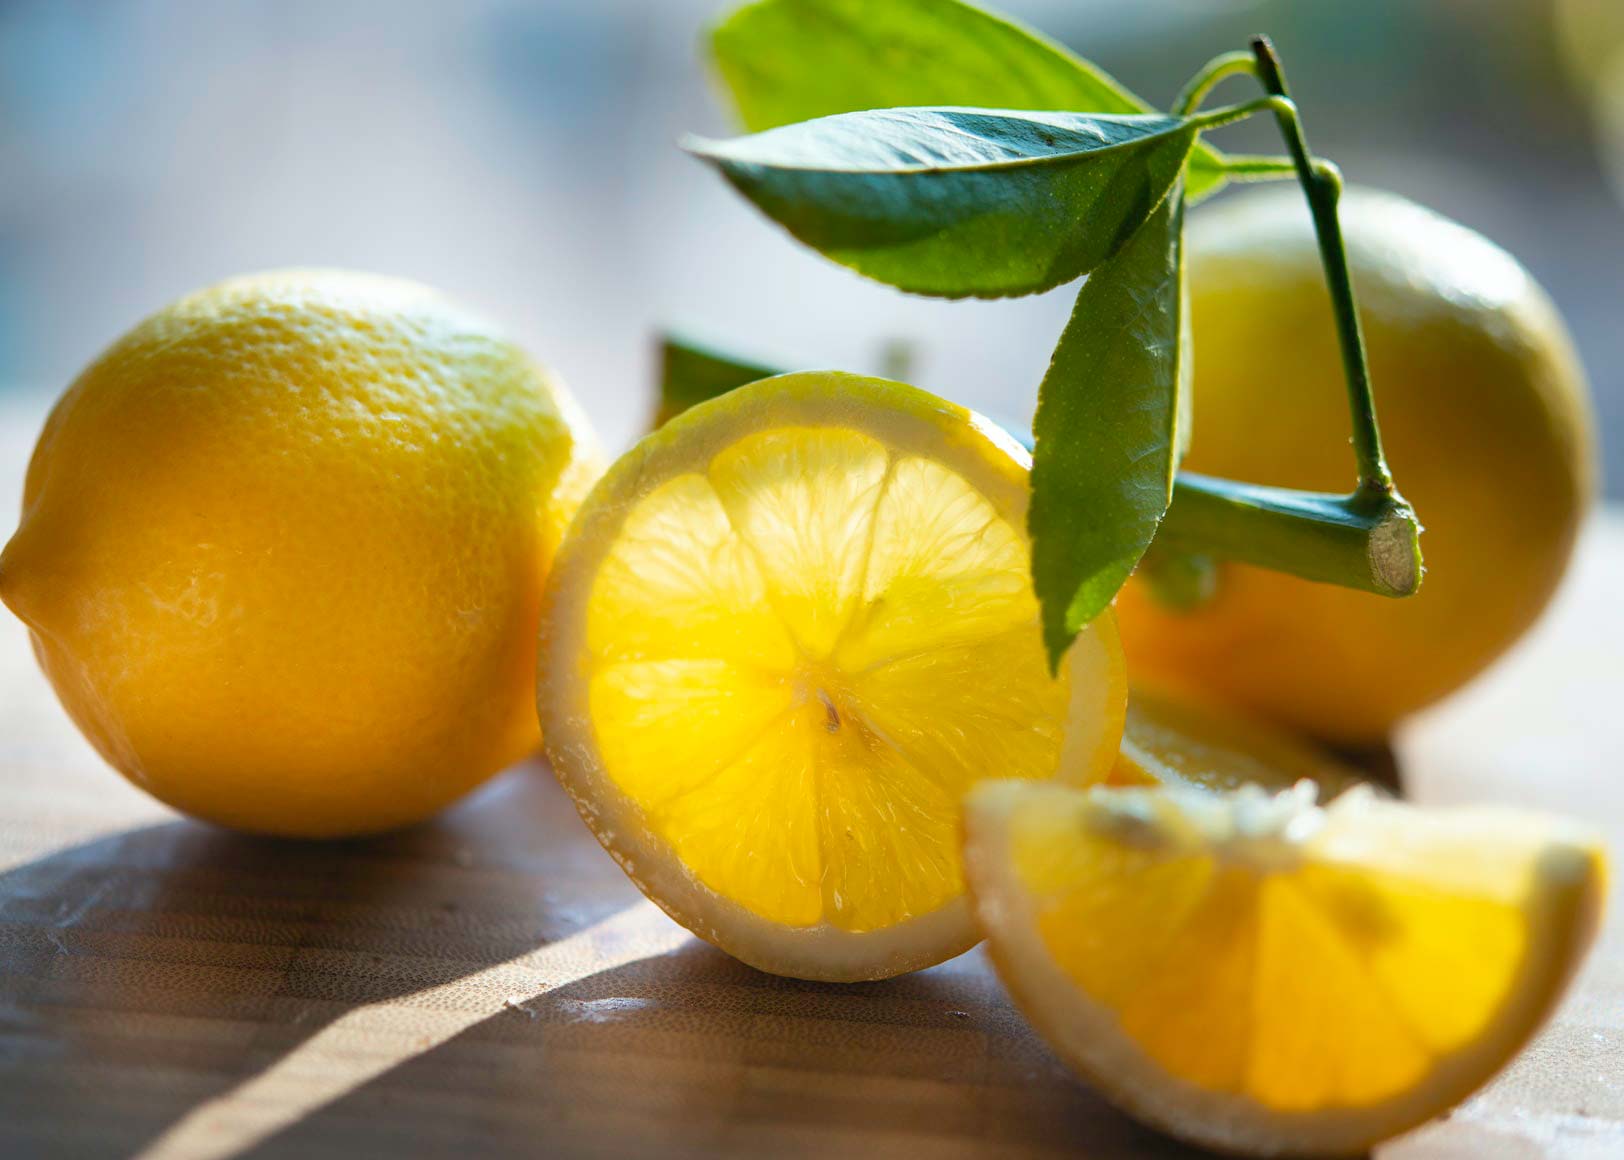 Using Lemons to Prevent Kidney Stones